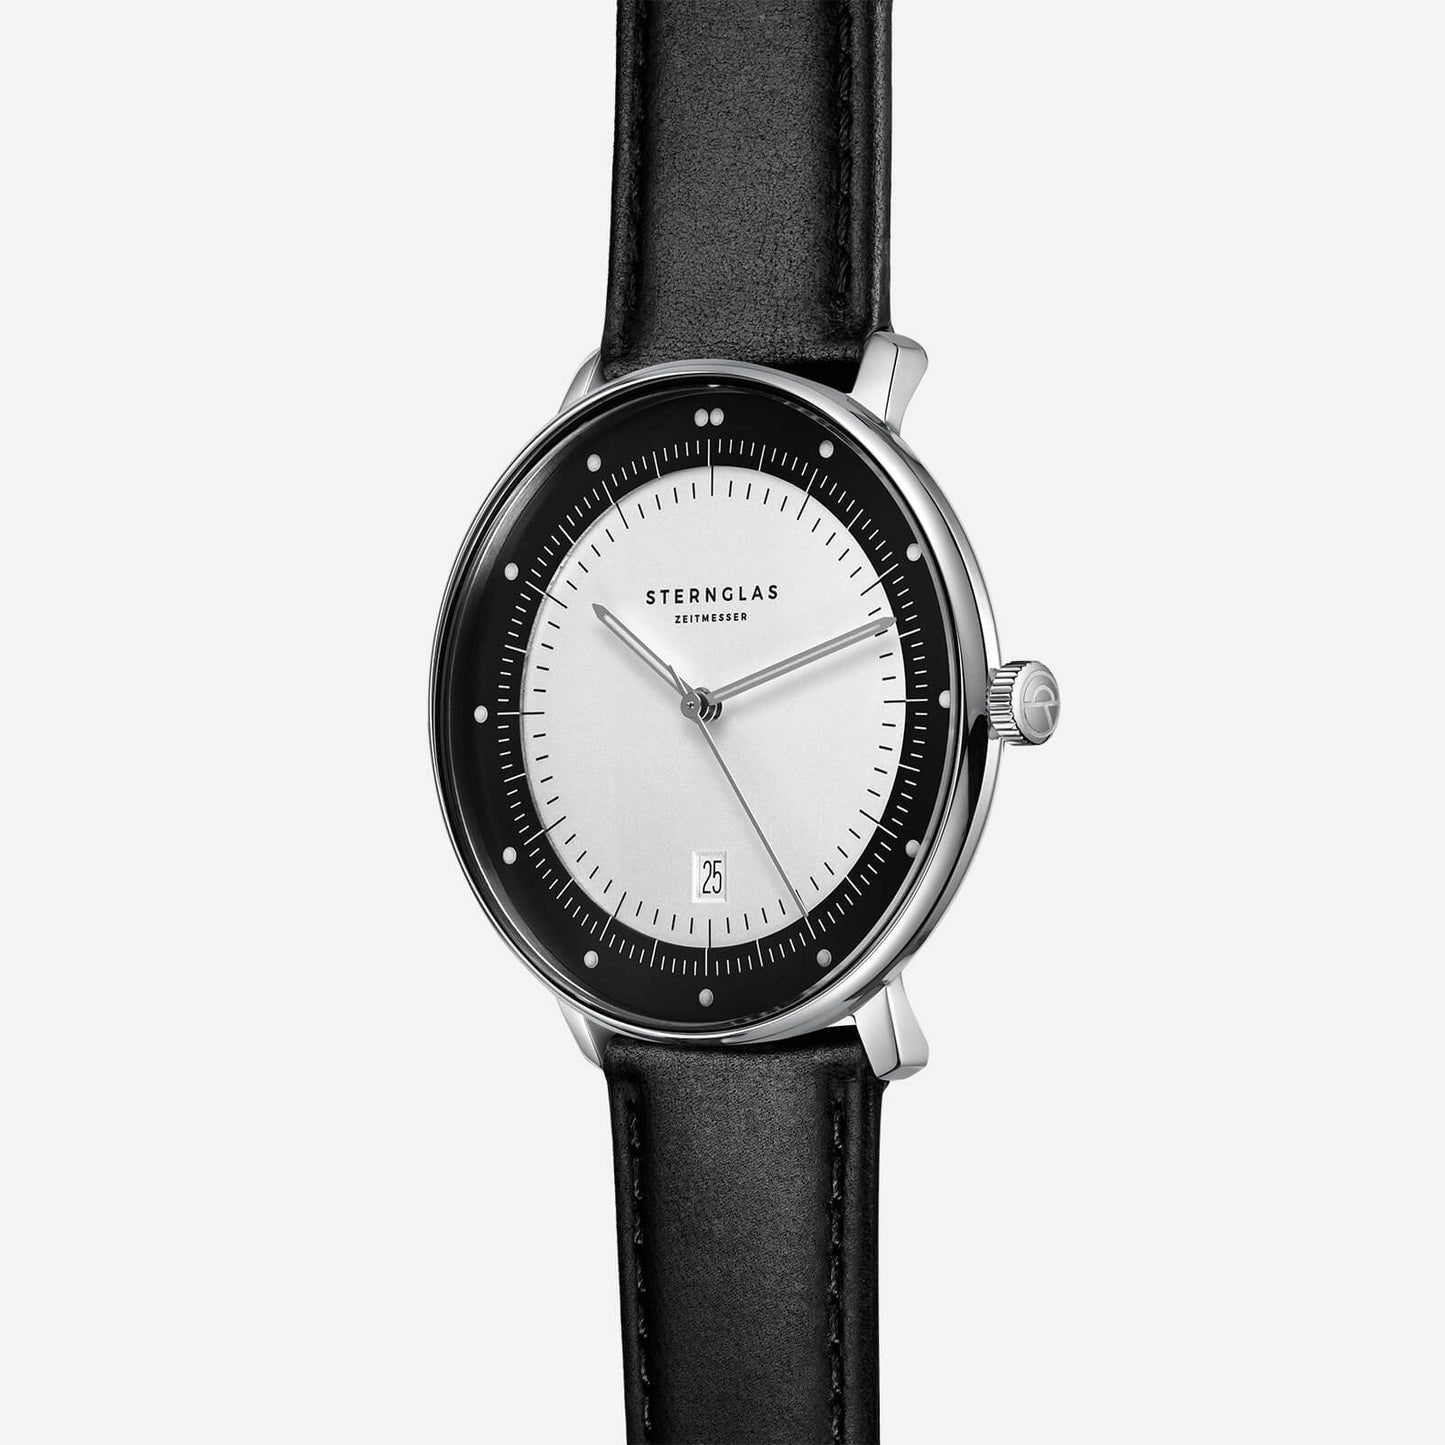 popup|Flache Bauweise|Das Premium Uhrwerk des Schweizer Herstellers Ronda ermöglicht eine besonders flache Gehäusekonstruktion.